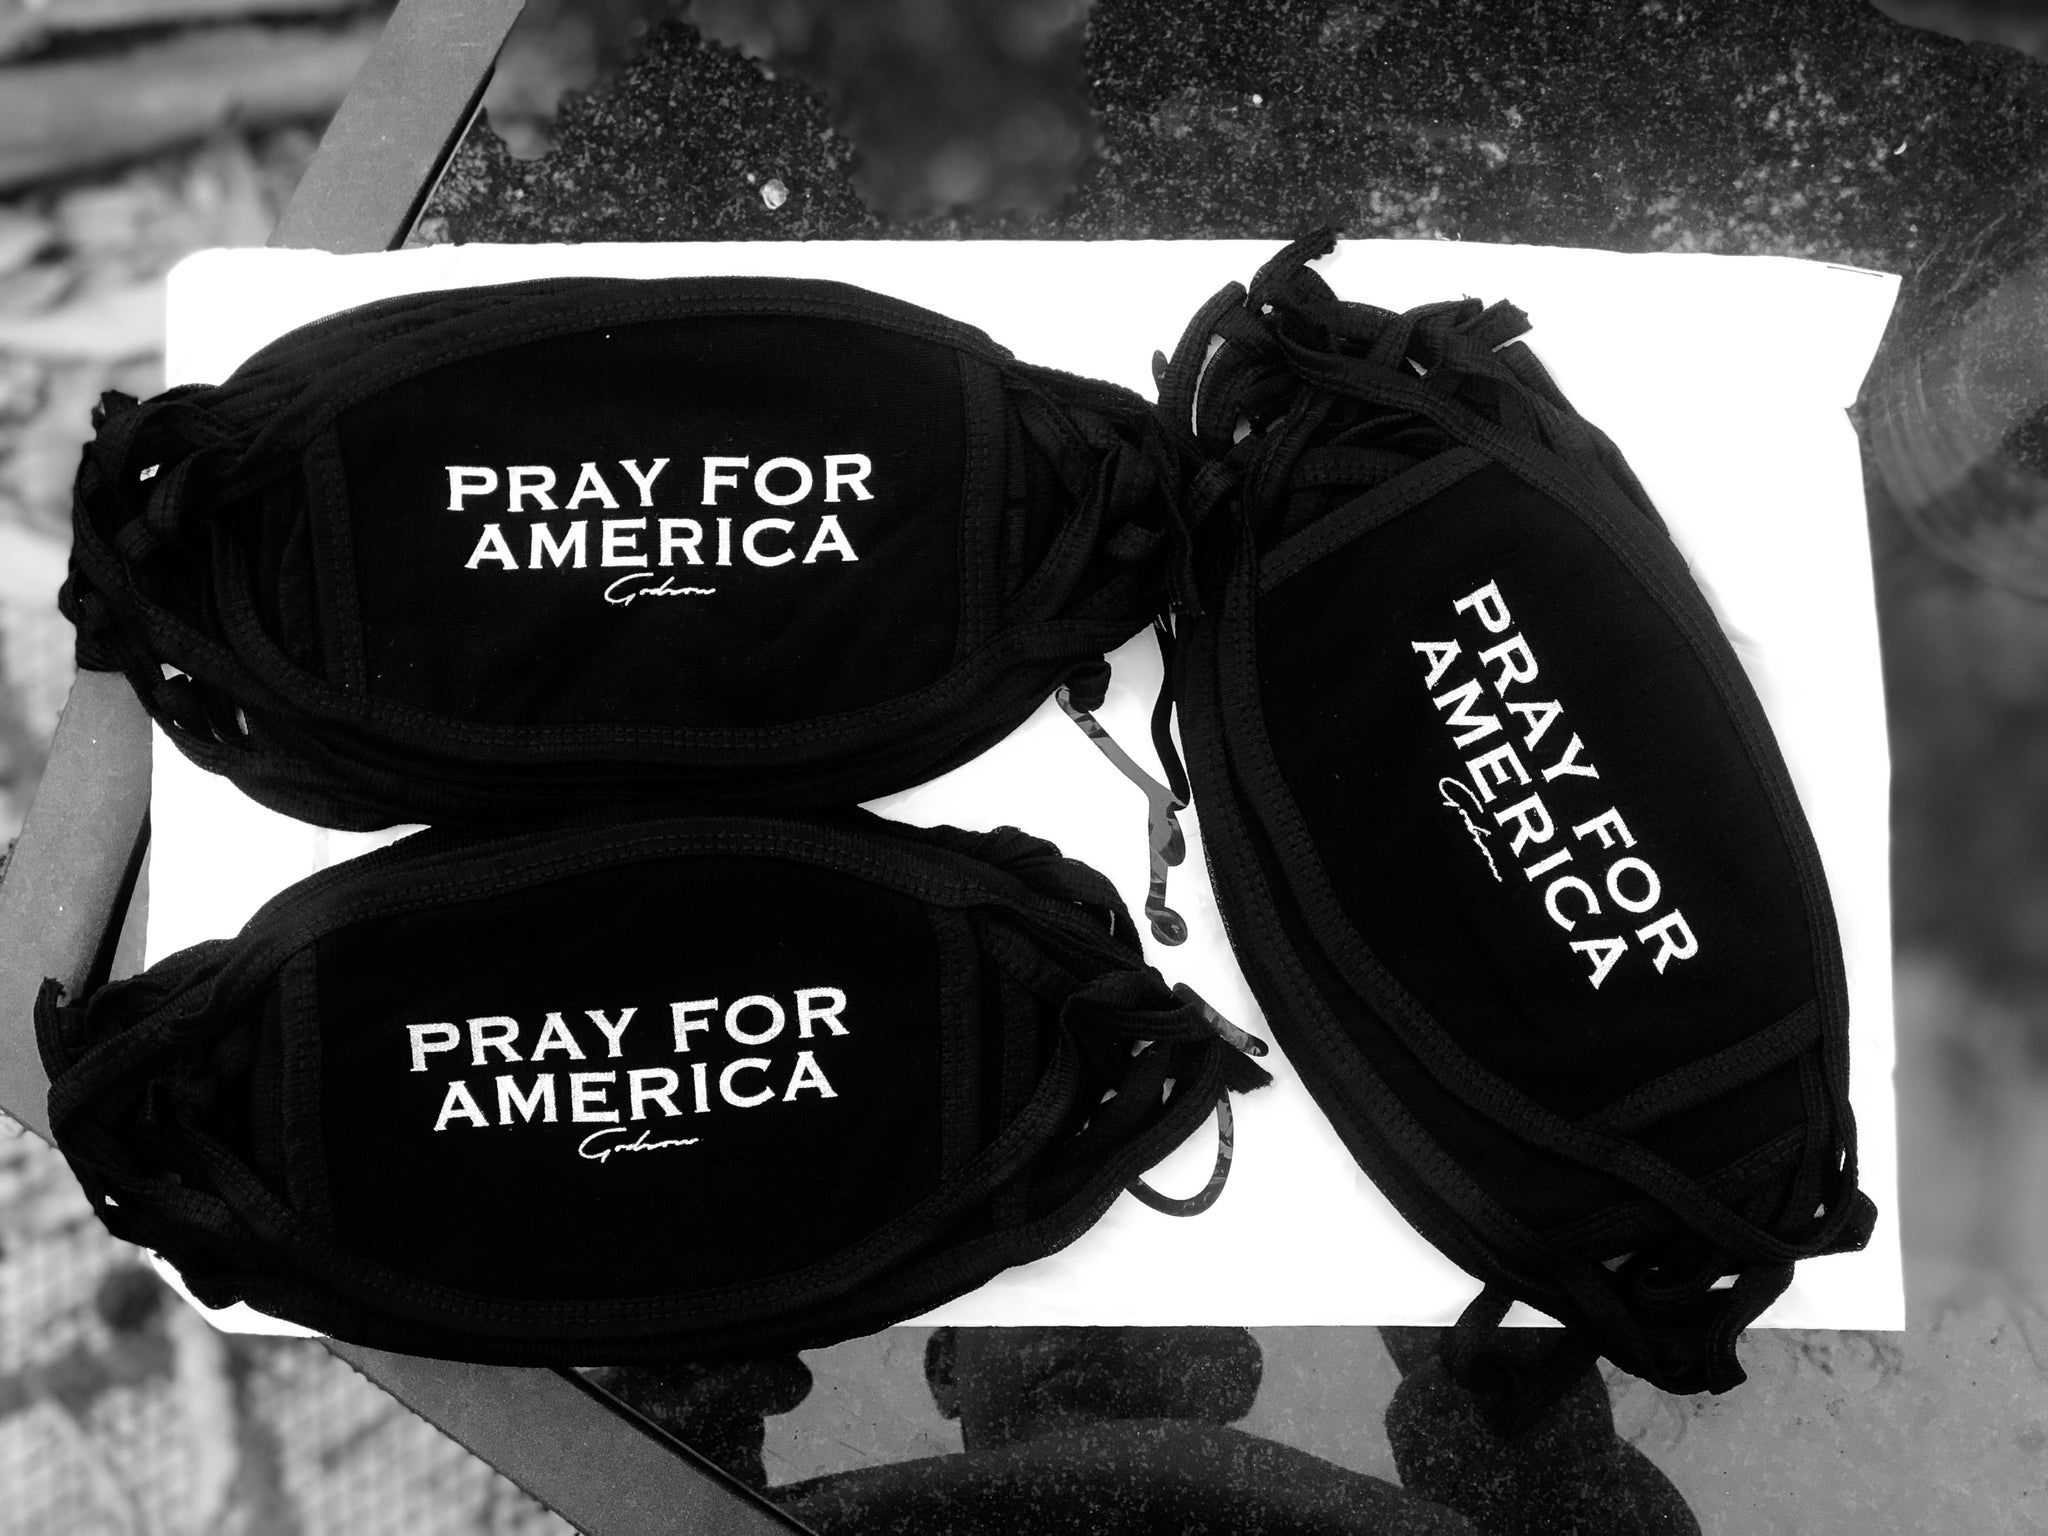 Pray for America Mask - GODSON